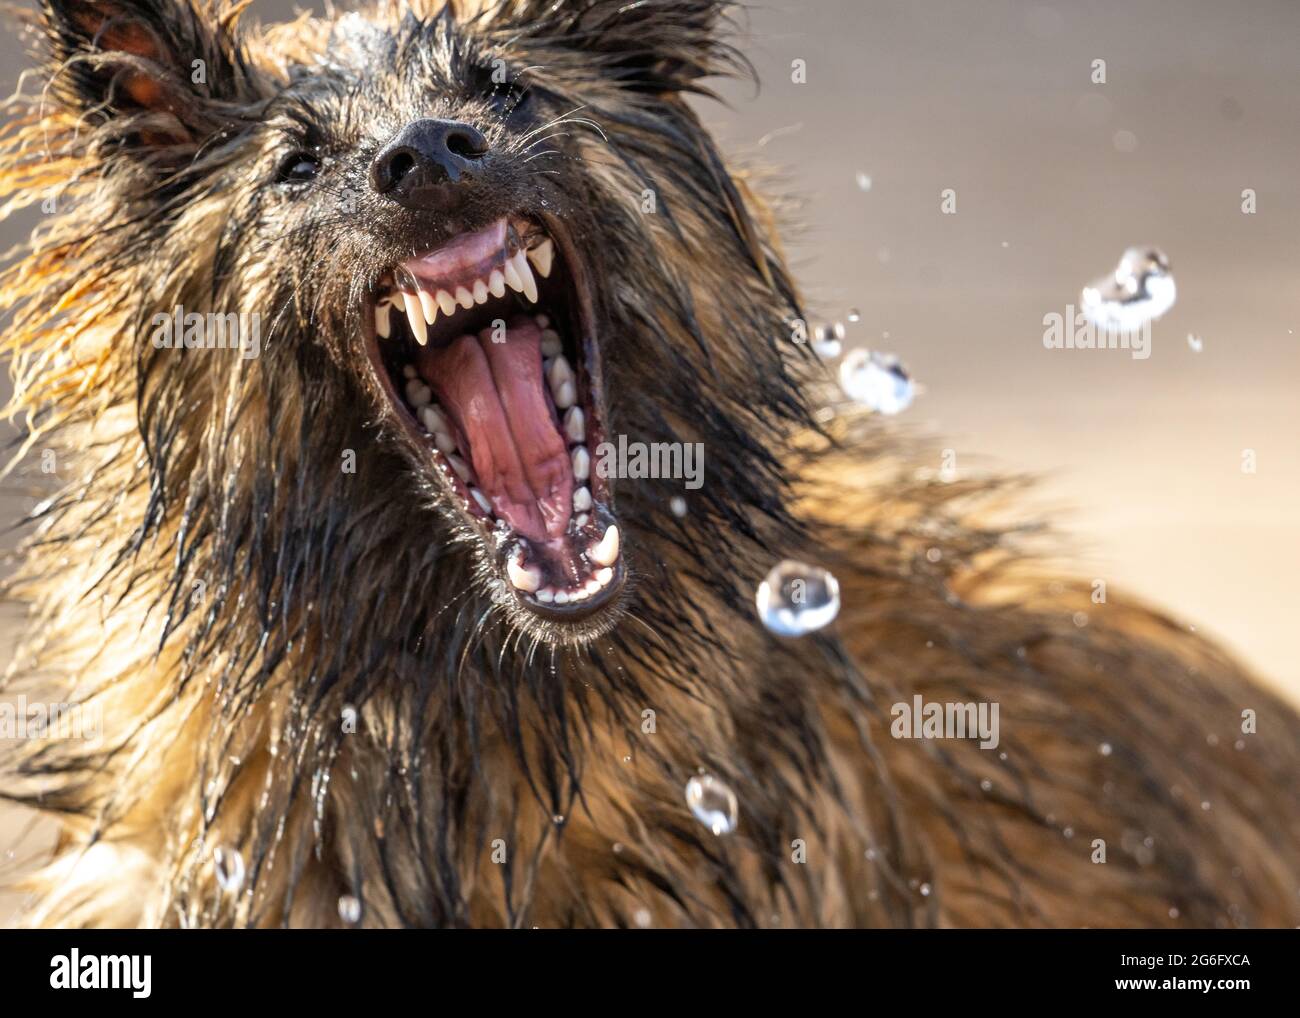 Elsässischer Welpe Hund Deutscher Schäferhund suchen wild tragende Zähne versuchen, Wasser aus Schlauch-Rohr angreifen. Scharfe Eckzähne aus der Nähe des Wachhundes Stockfoto